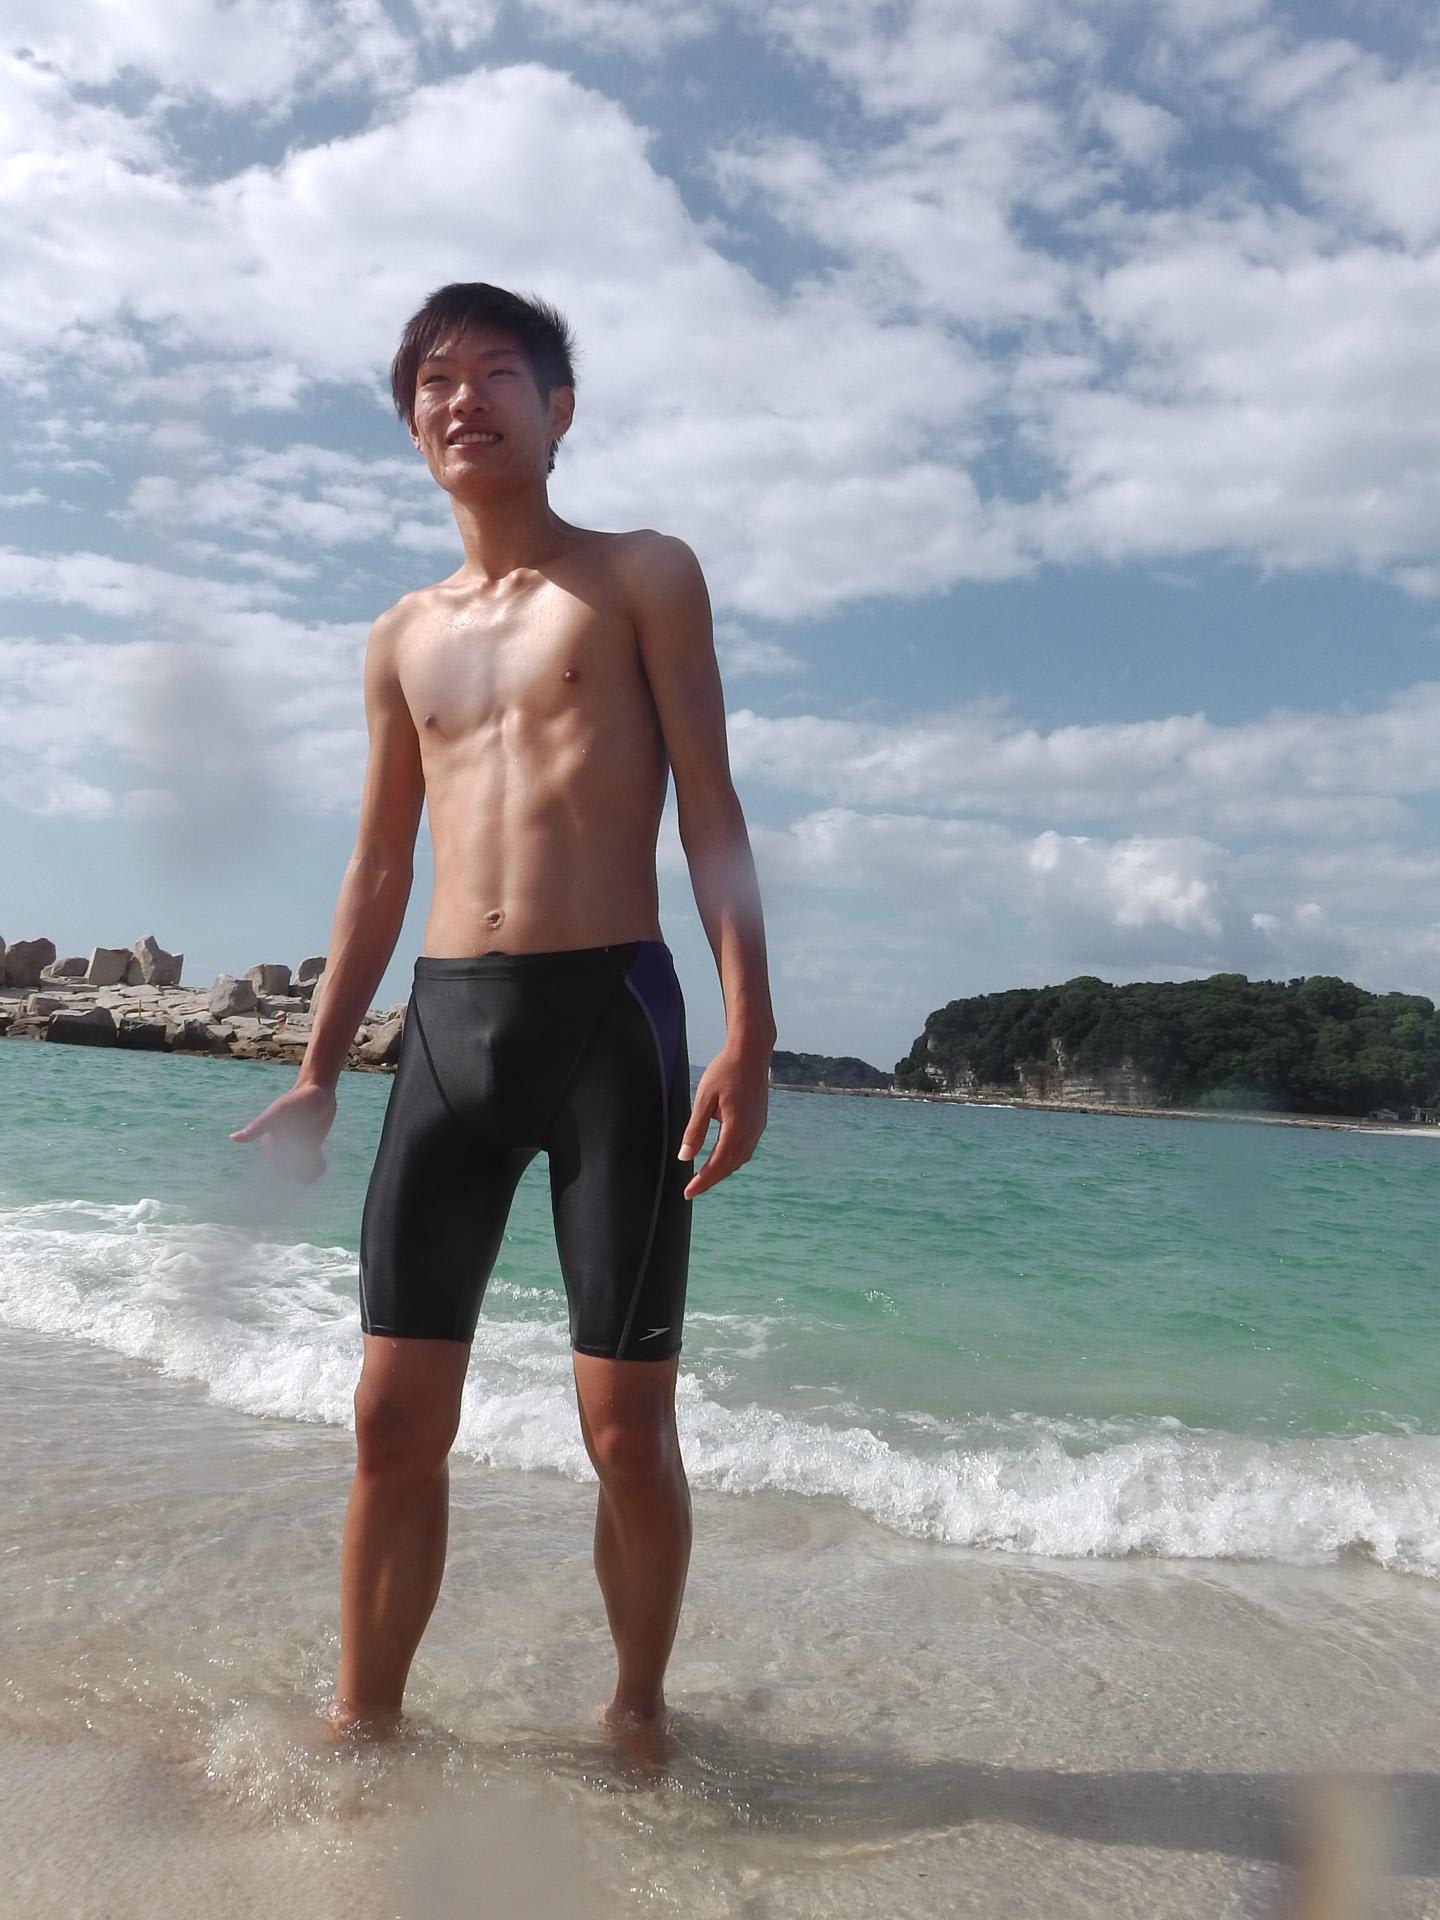 ブサカワシリーズ第２弾 まさる君 ９月２４日 白浜 白良浜海水浴場で撮影 スパッツ１種 ３９５カット 水着男子モデルが提供する各種サービスについてのご案内ブログです